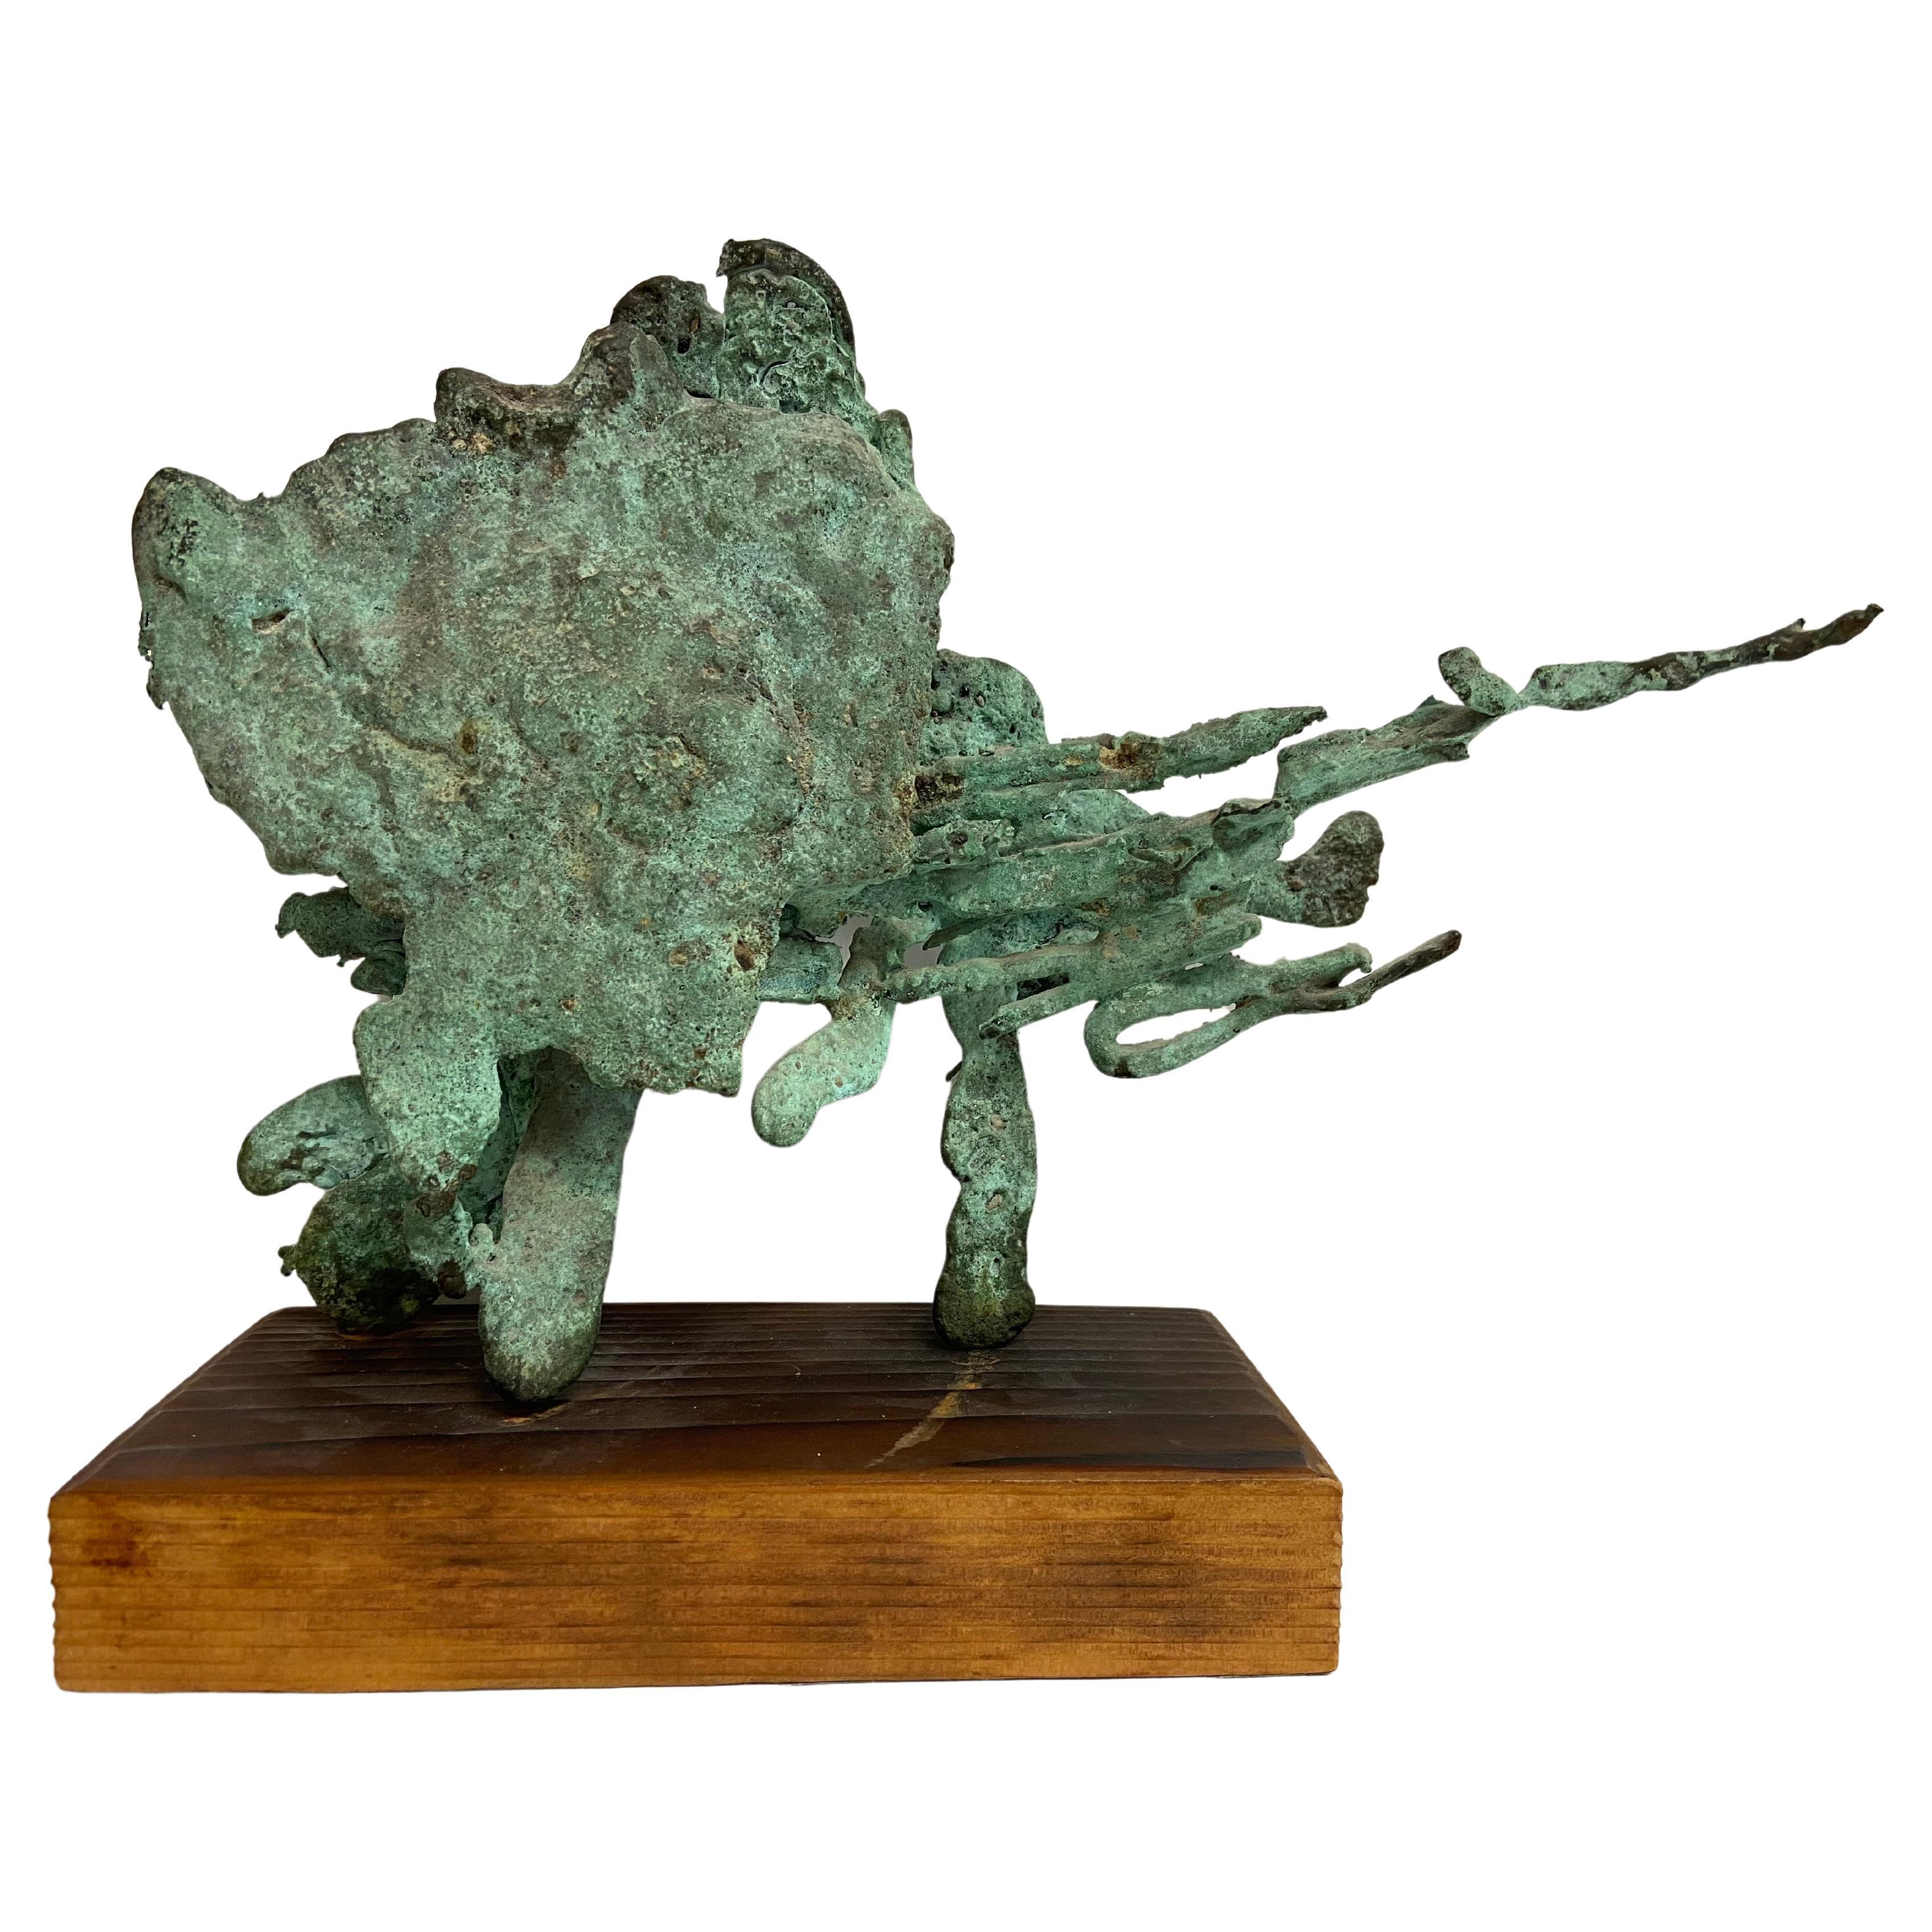 Vintage Verdigris Patina Spill Cast Bronze Brutalist Sculpture on Wood Base